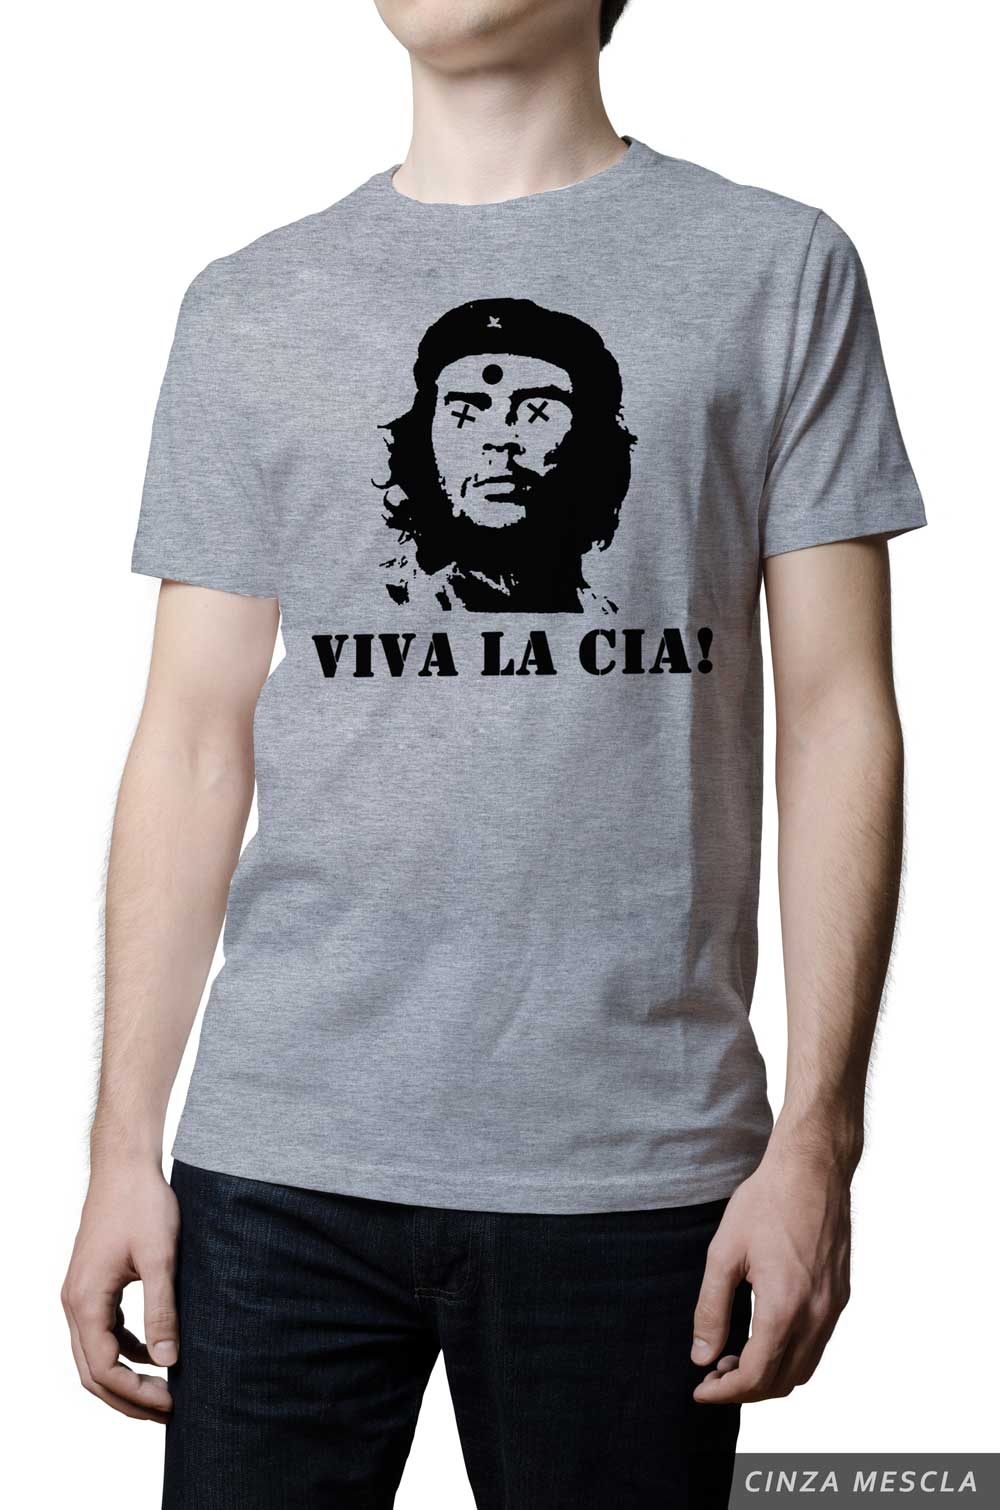 Camiseta - Anti-Che Guevara - Viva la CIA!